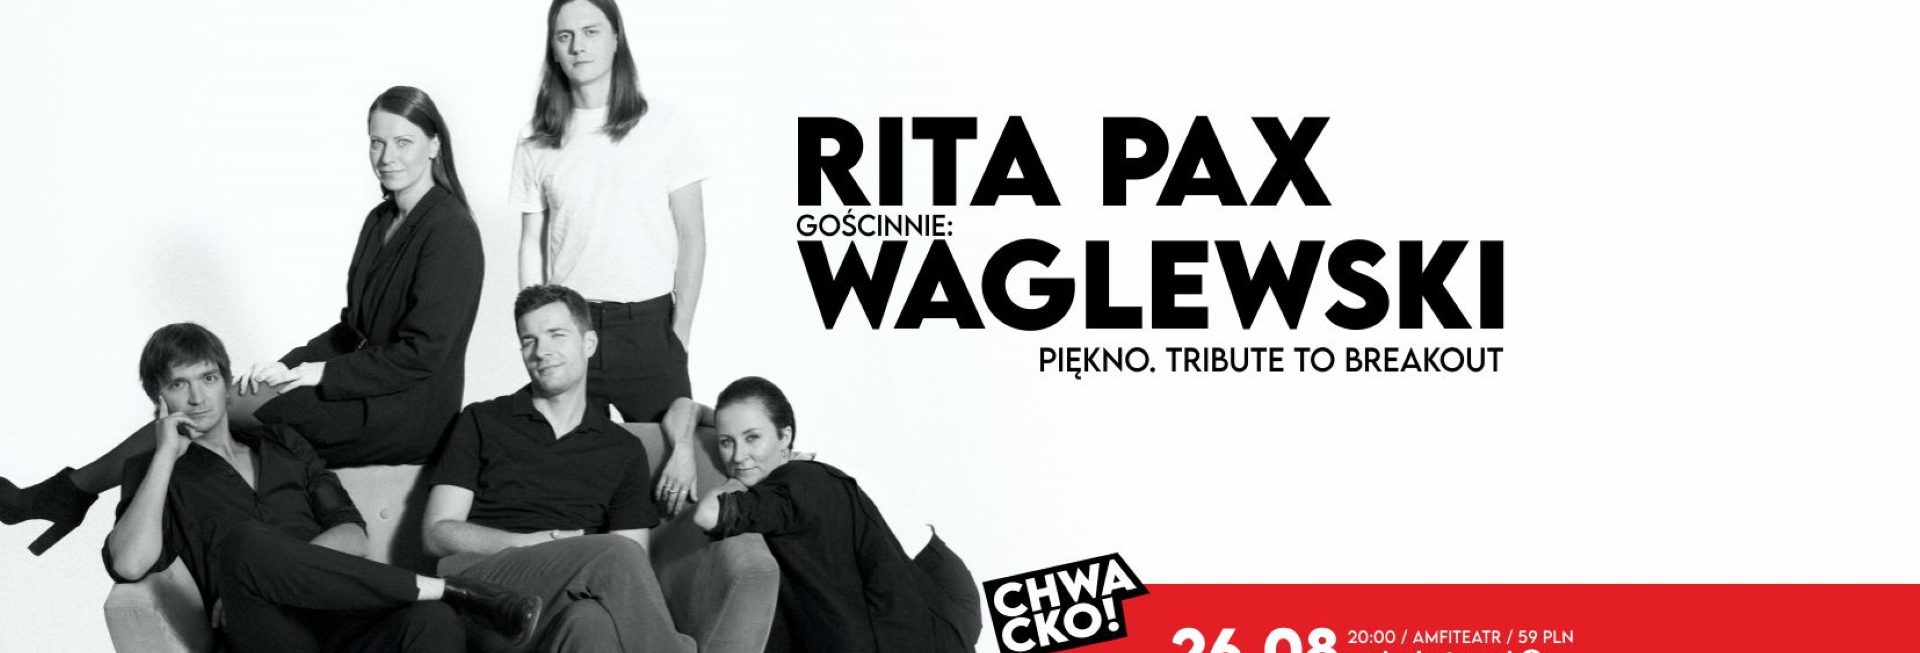 Plakat zapraszający w sobotę 26 sierpnia 2023 r. do Olsztyna na koncert Rita Pax & Wojciech Waglewski w Olsztynie "Piękno" Tribute to Breakout Olsztyn 2023.